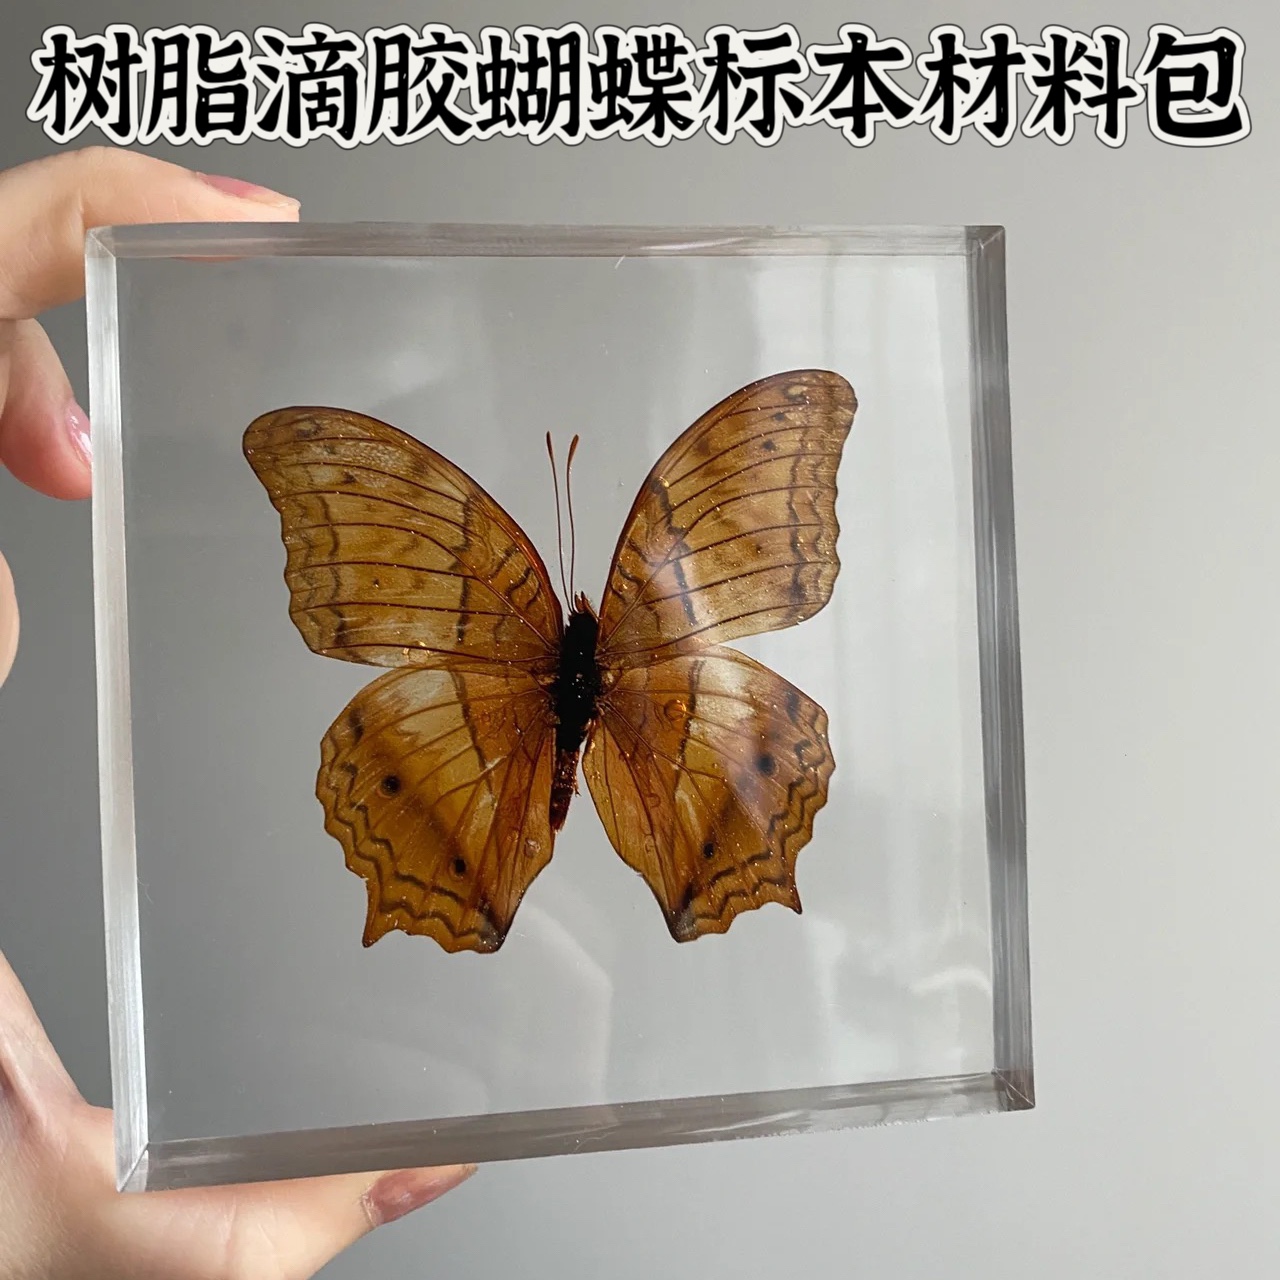 真蝴蝶蜻蜓昆虫标本水晶滴胶ab树脂胶琥珀手工diy制作材料工具包